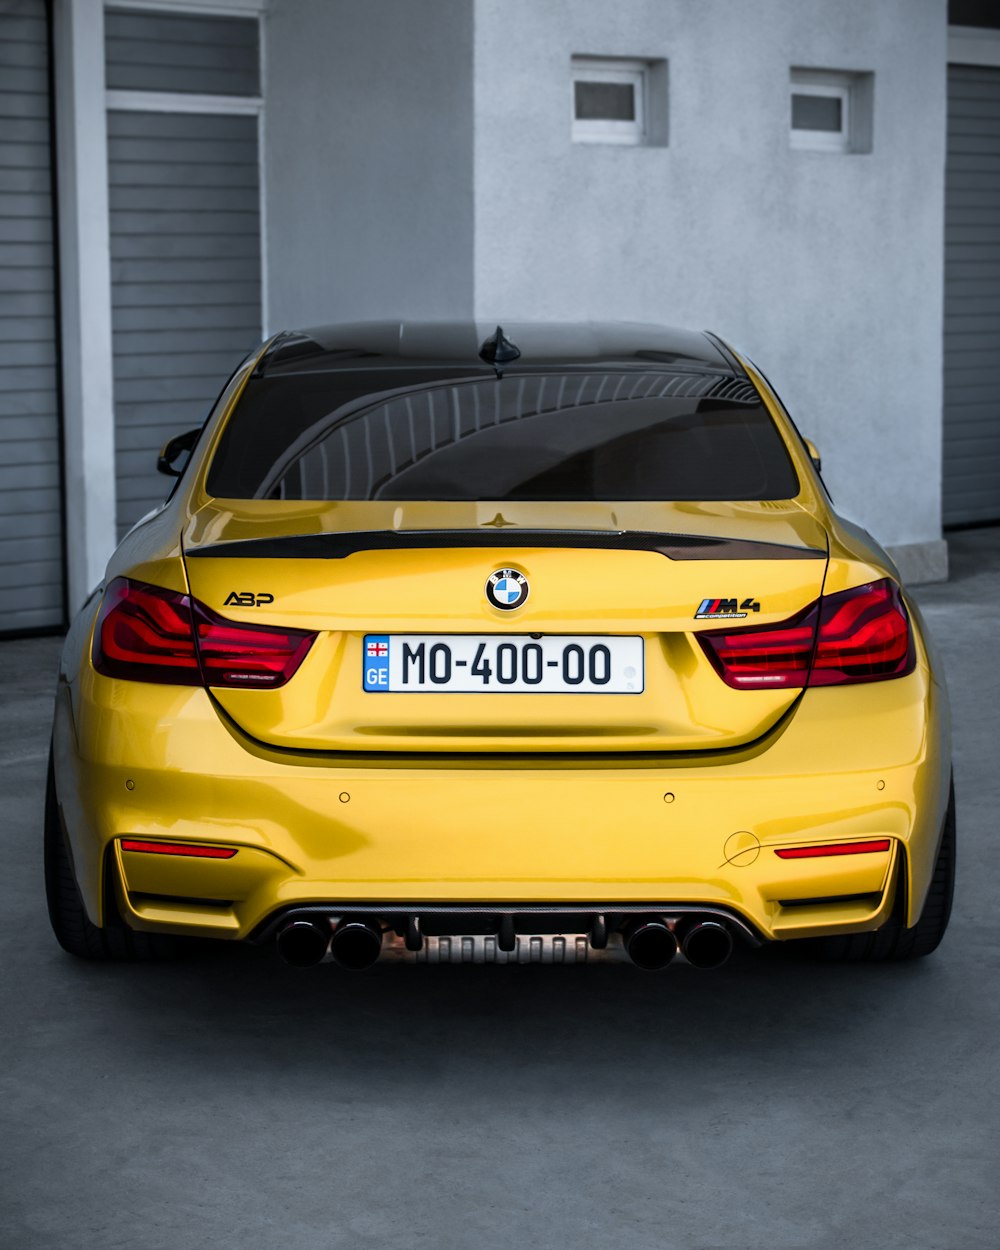 Un coche BMW amarillo aparcado en un garaje